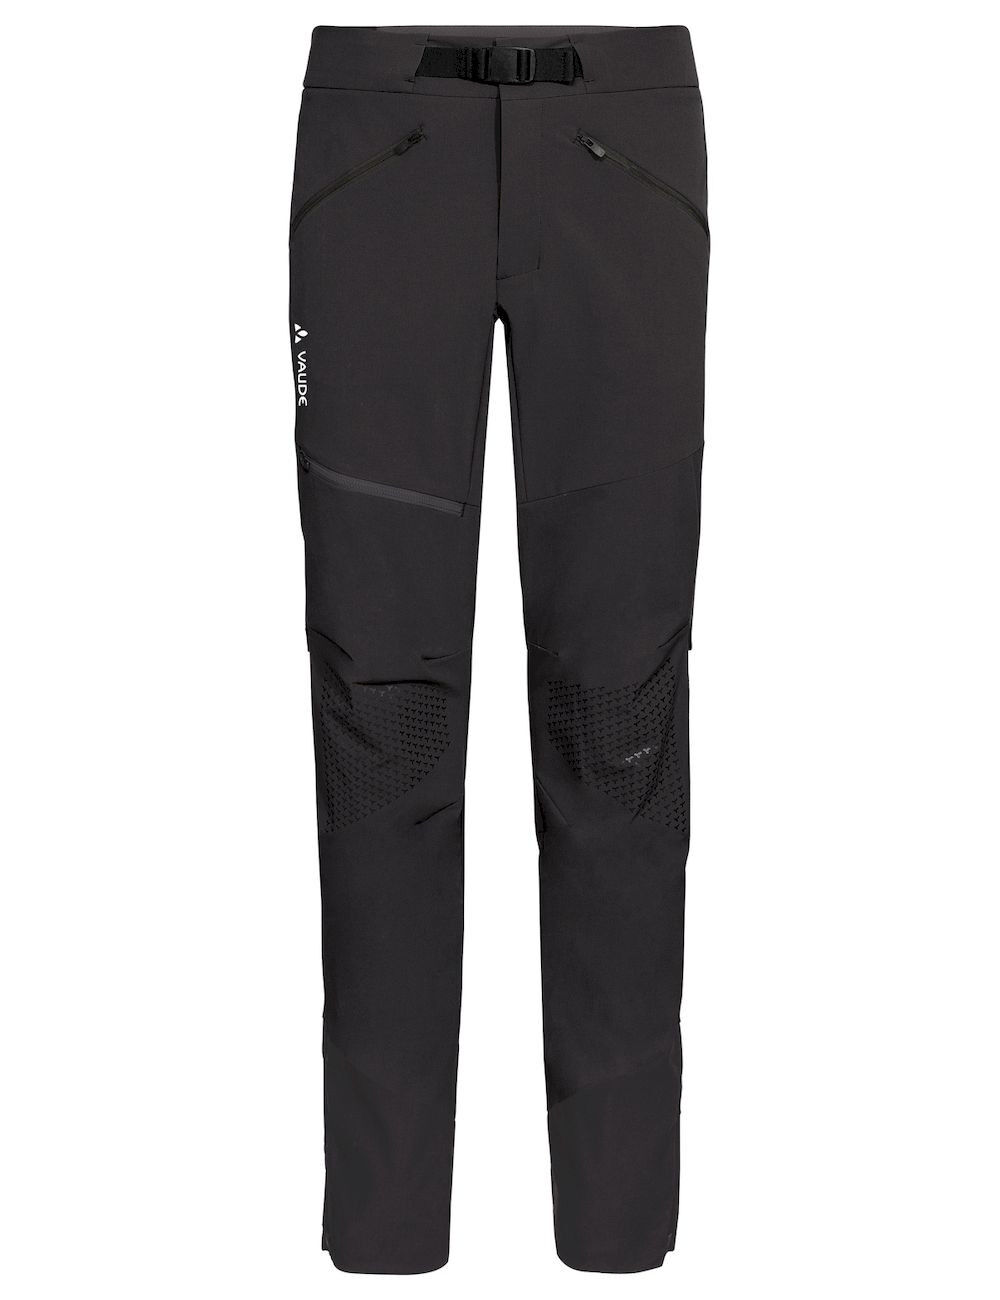 Vaude Croz Pants II - Mountaineering trousers - Men's